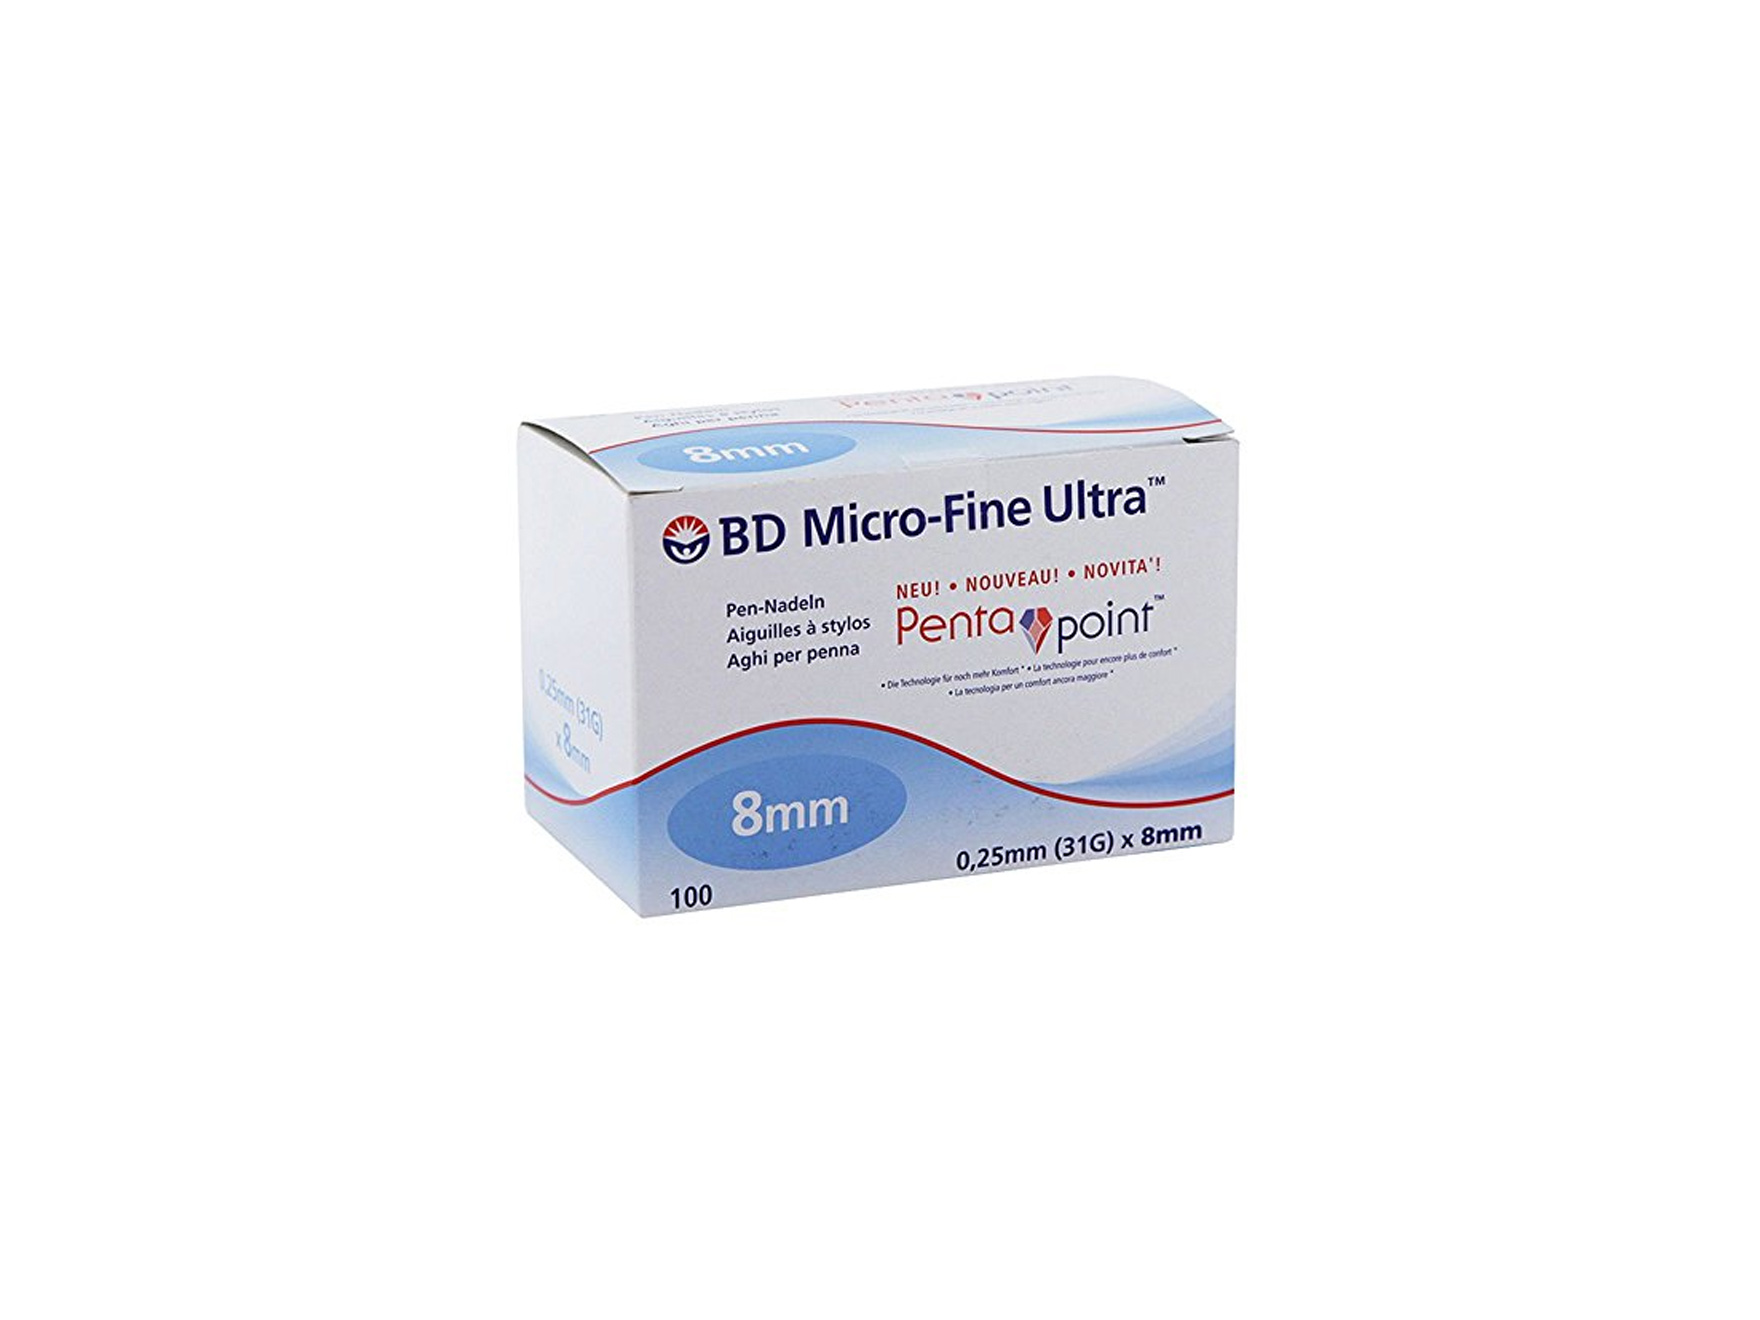 Micro-Fine™ - aiguilles pour stylo injecteur